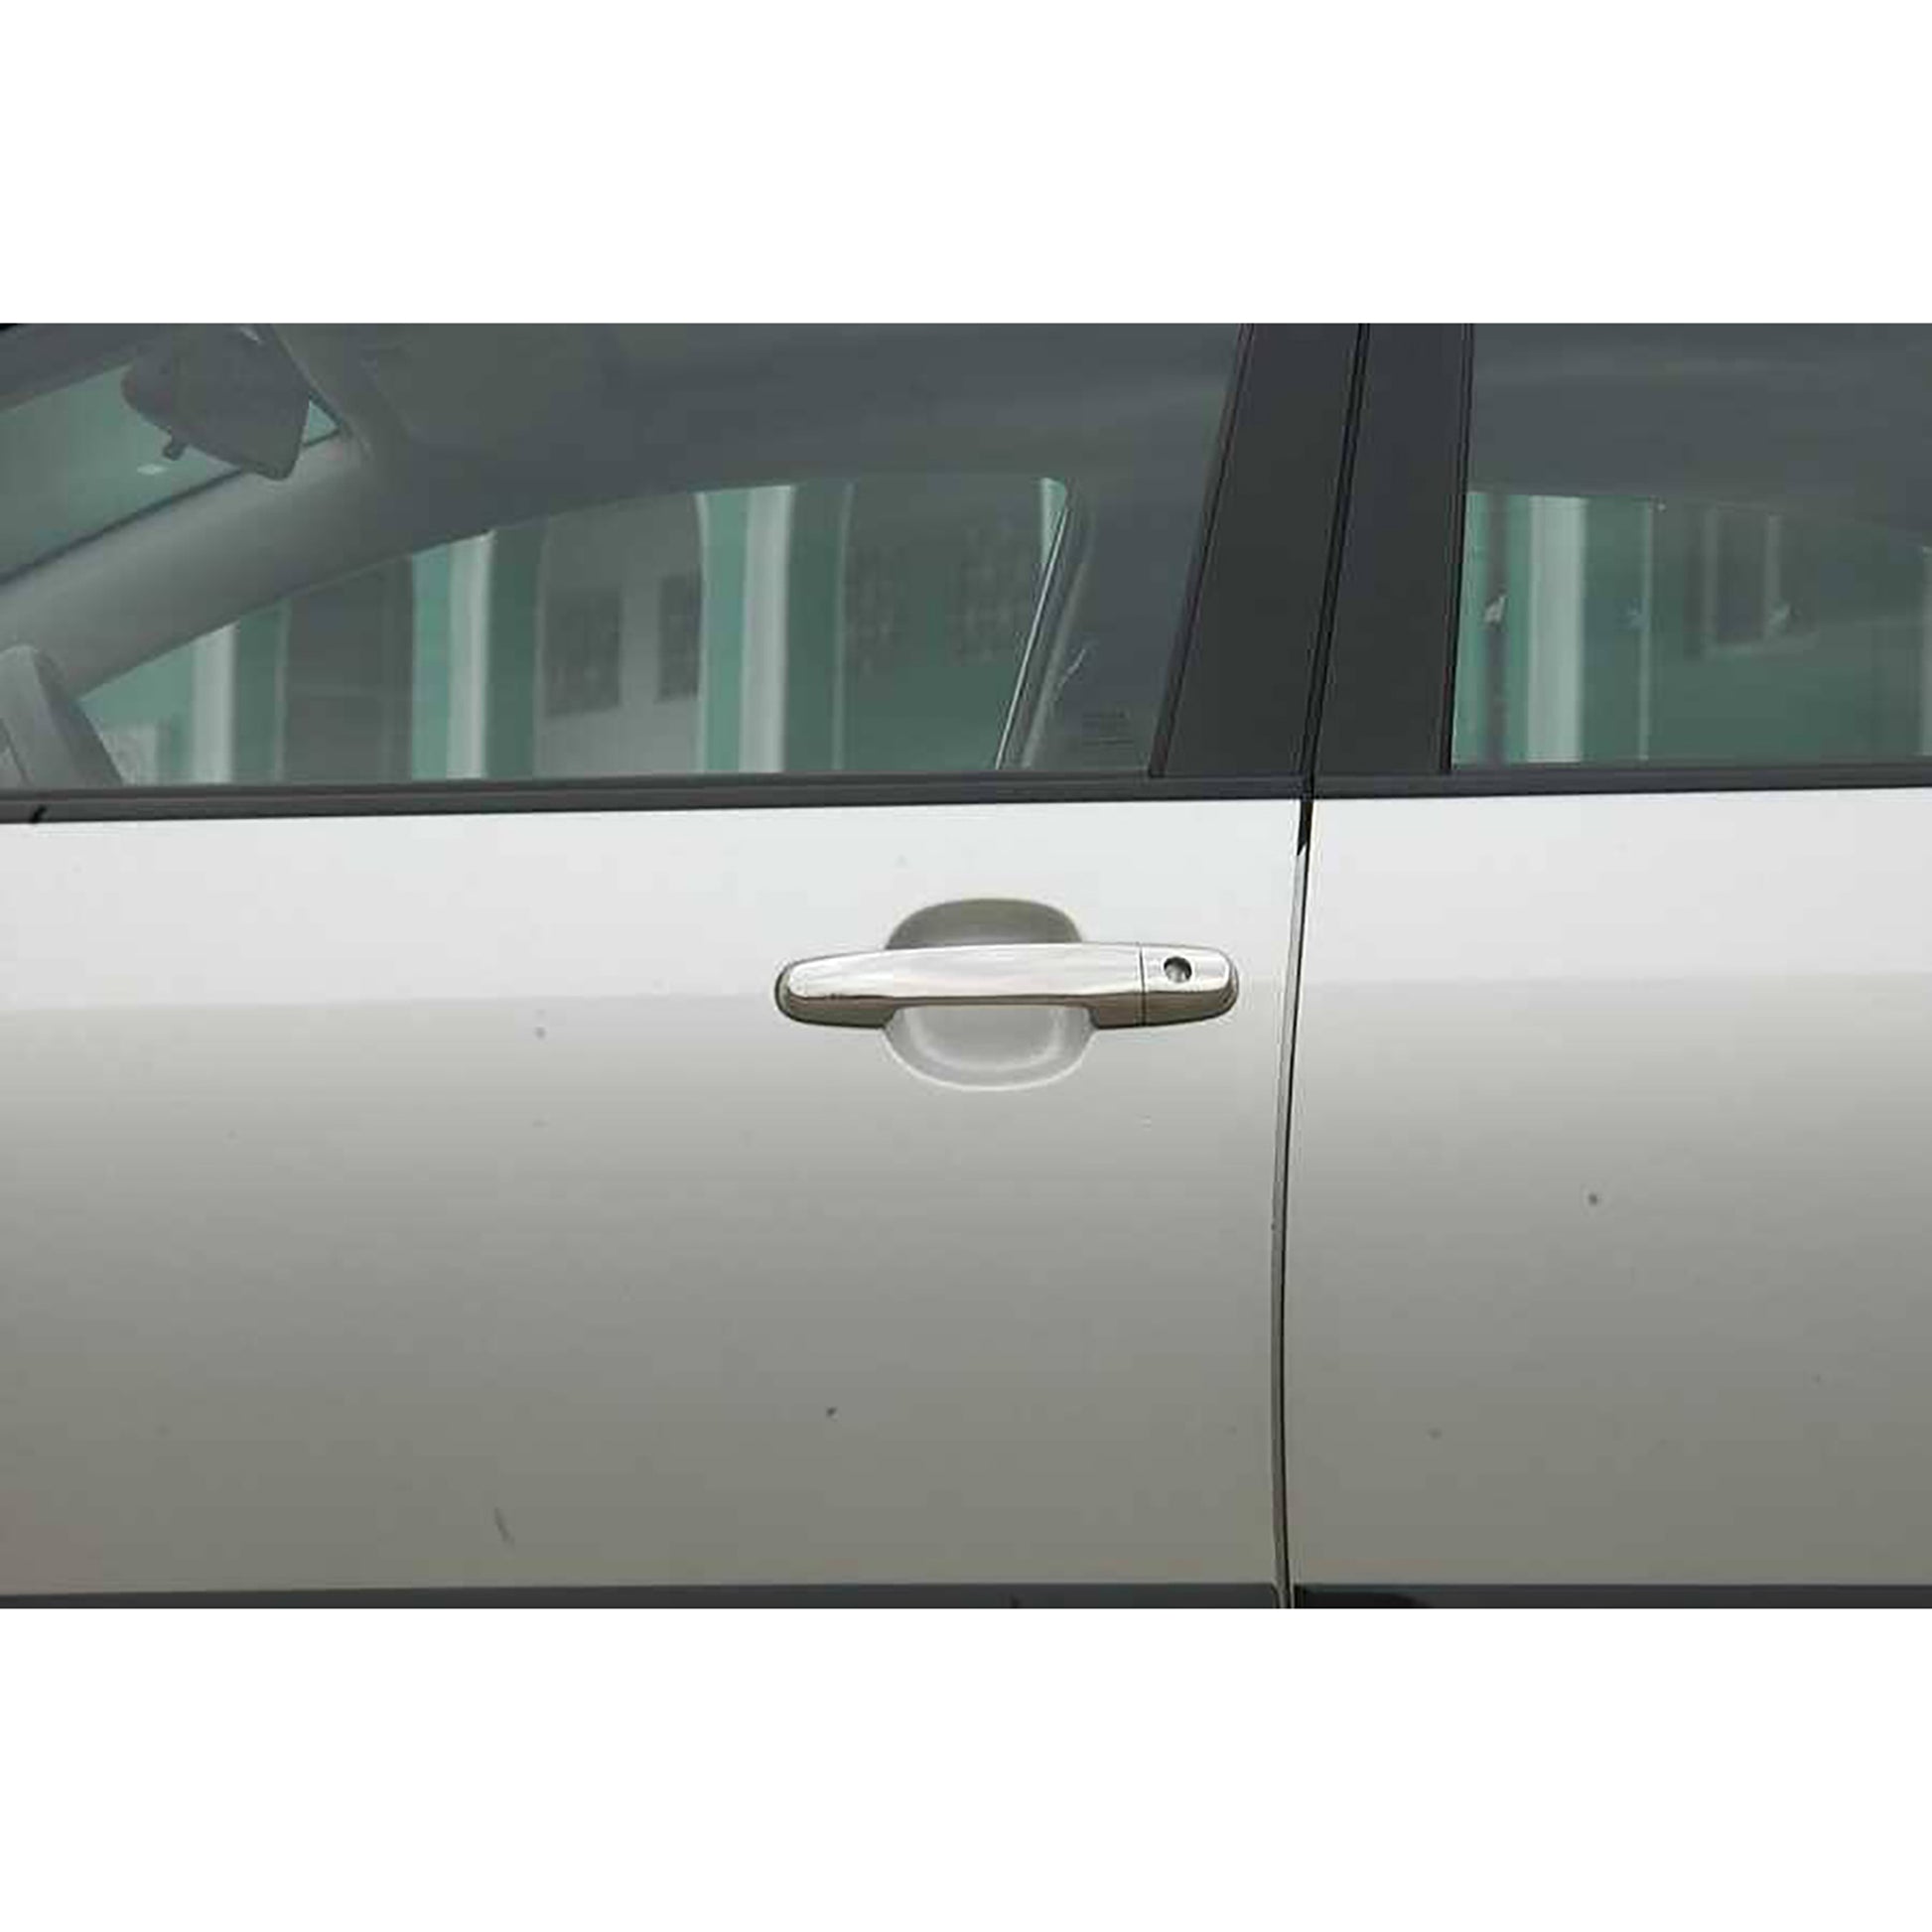 Toyota Avensis Kapı Kolu Aksesuarları Detaylı Resimleri, Kampanya bilgileri ve fiyatı - 4